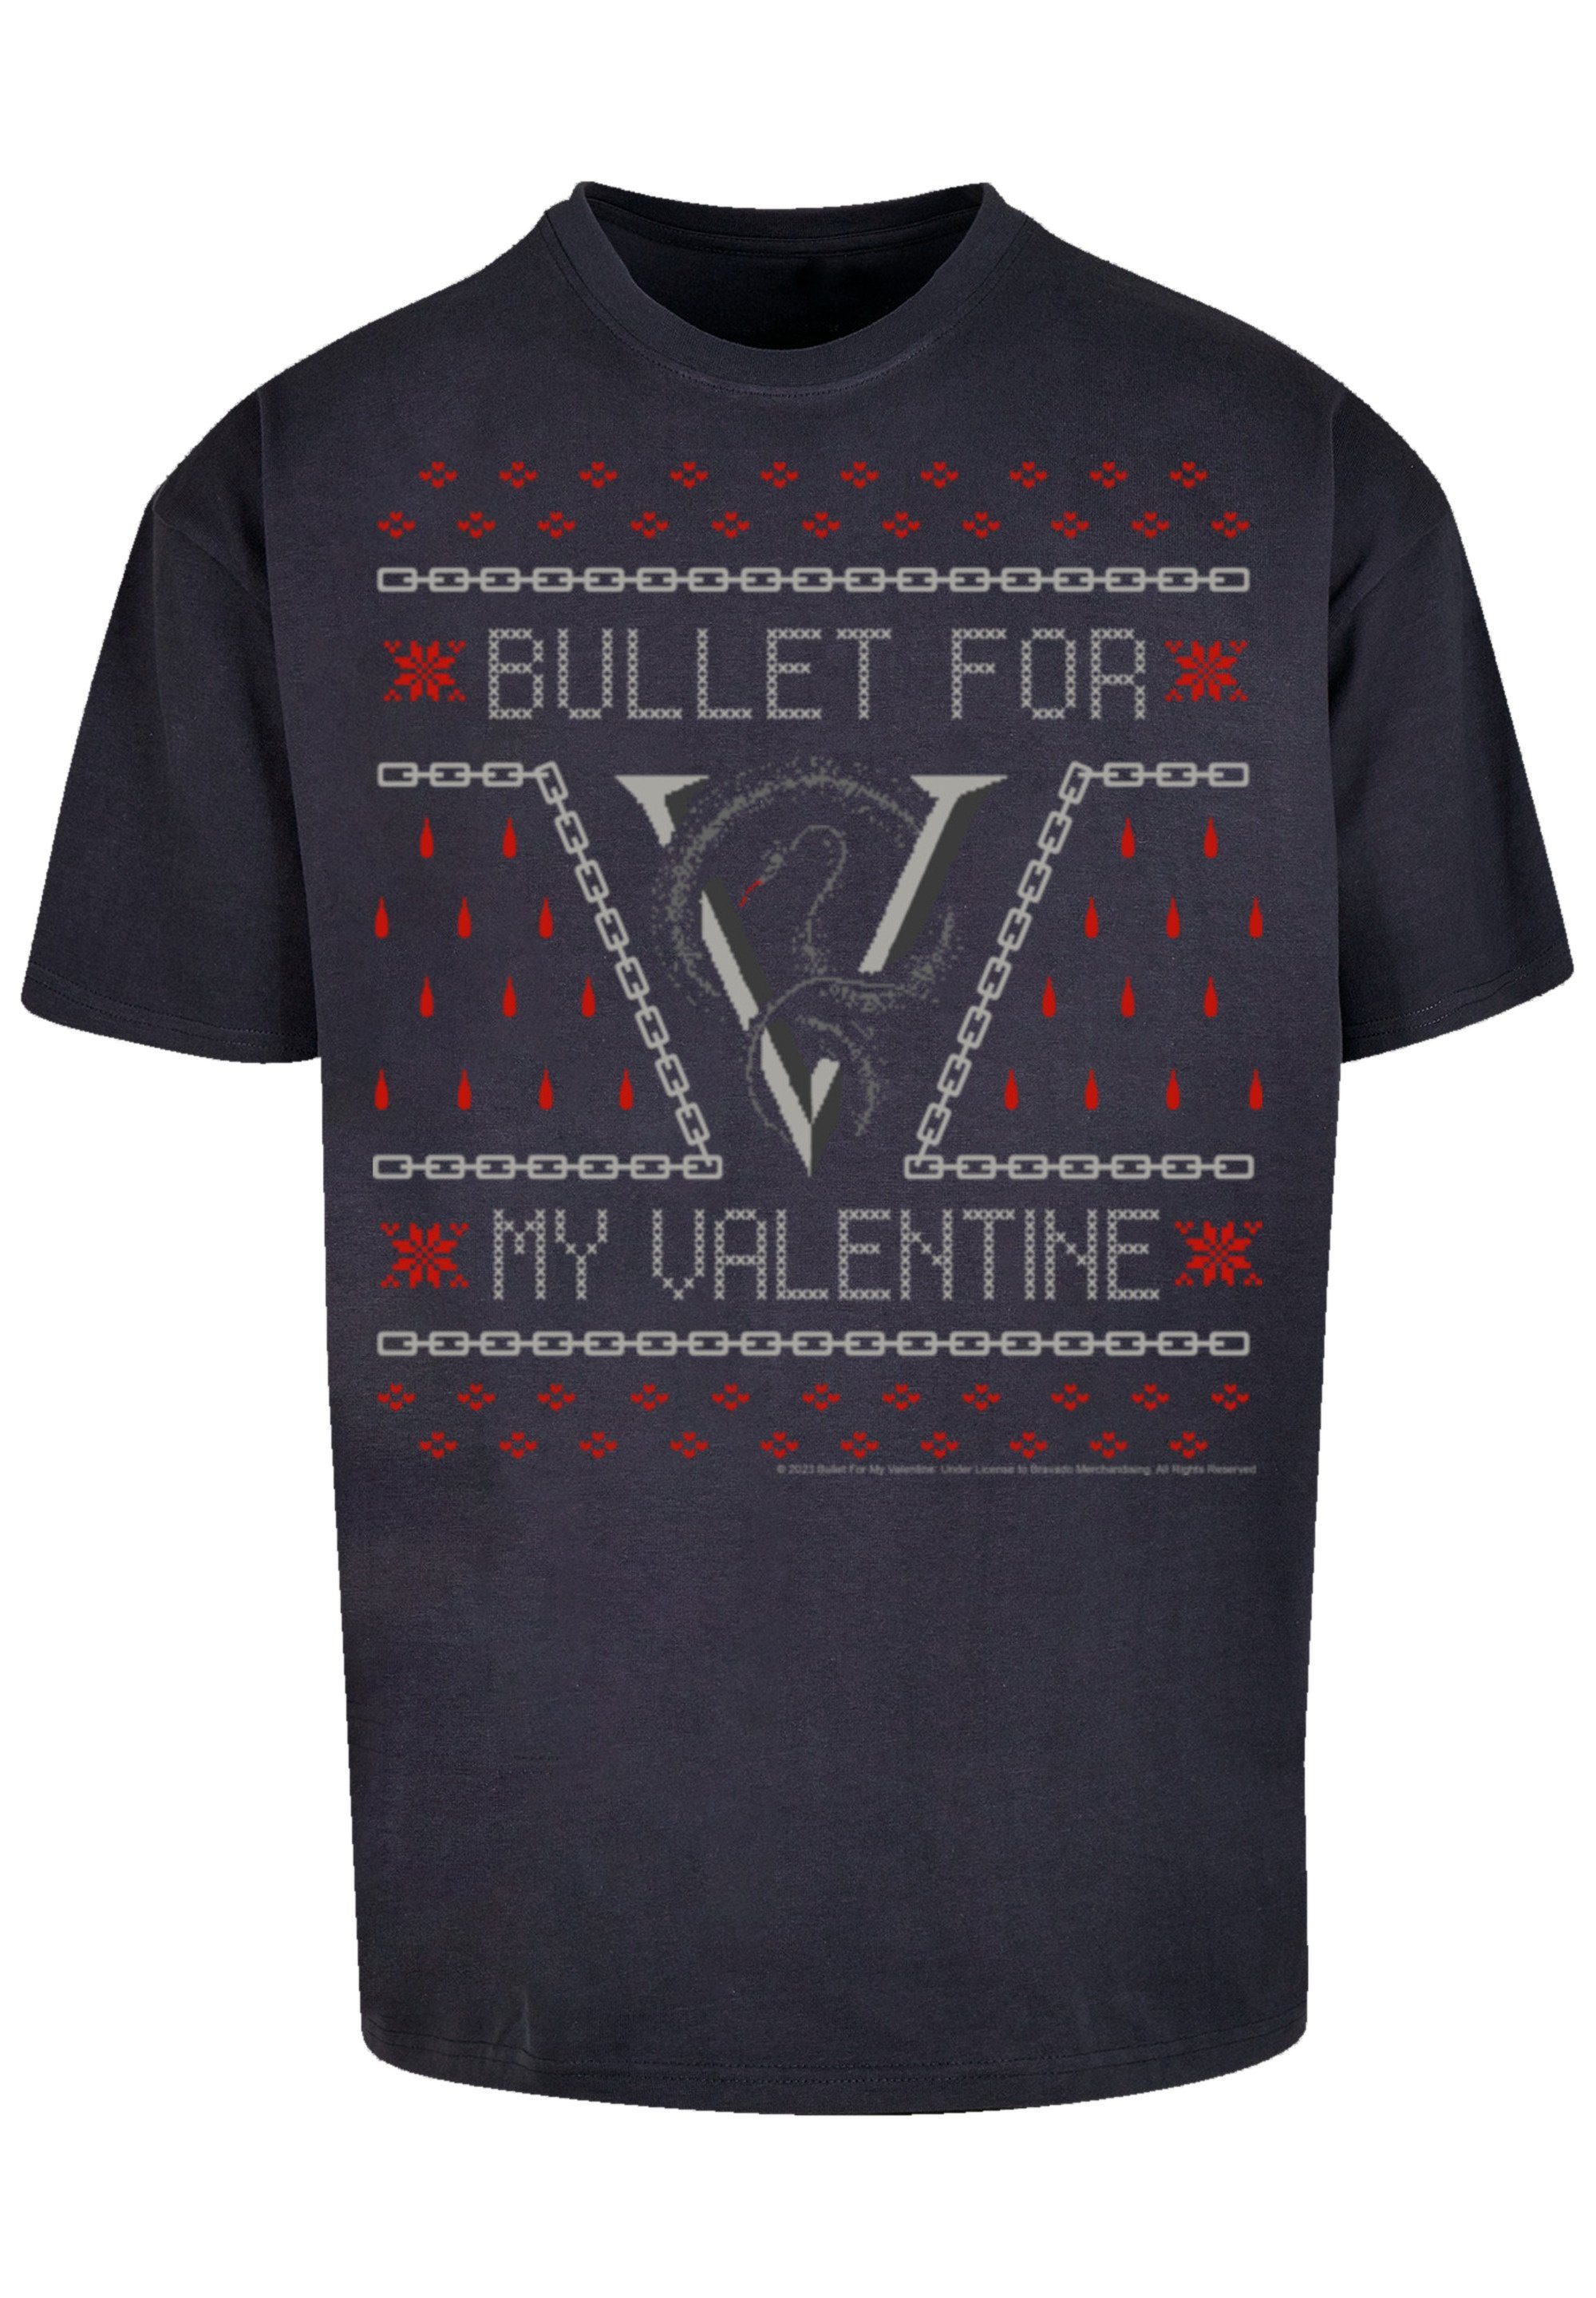 F4NT4STIC T-Shirt Bullet for my Valentine Metal Band Christmas Premium  Qualität, Rock-Musik, Band, Weite Passform und überschnittene Schultern